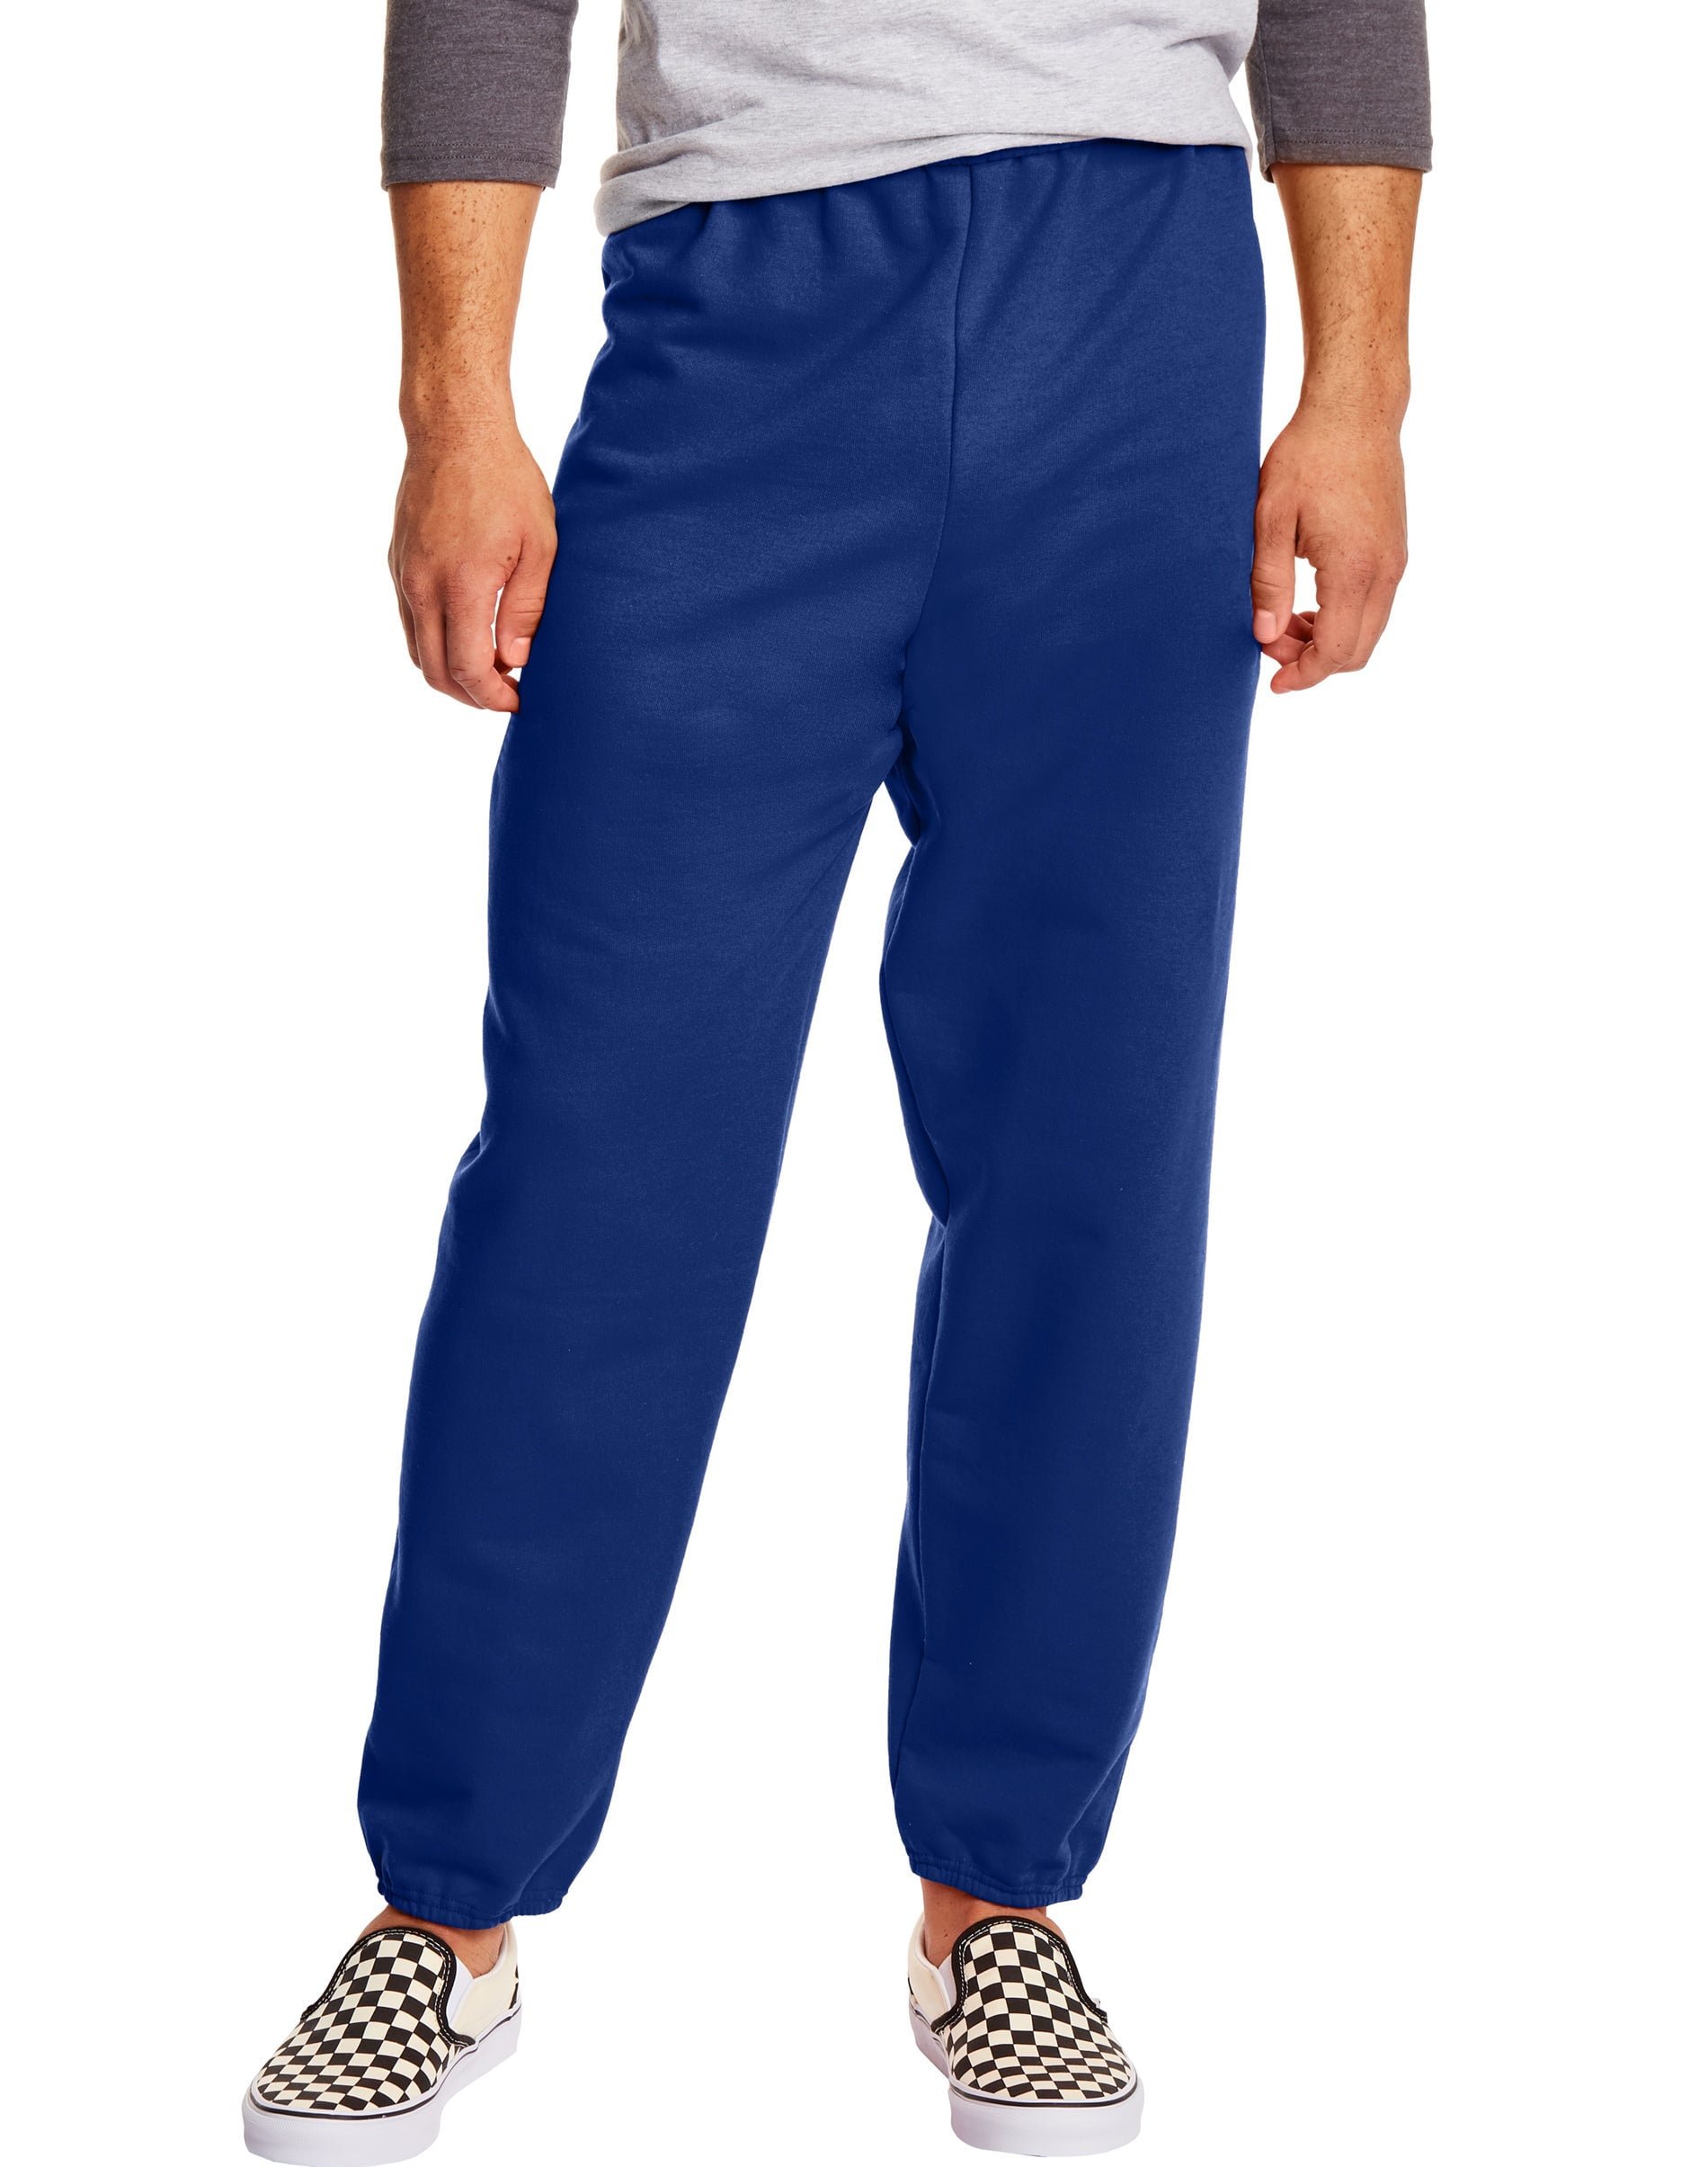 Hanes EcoSmart Men's Fleece Sweatpants, 2-Pack, 32 Charcoal Heather L 